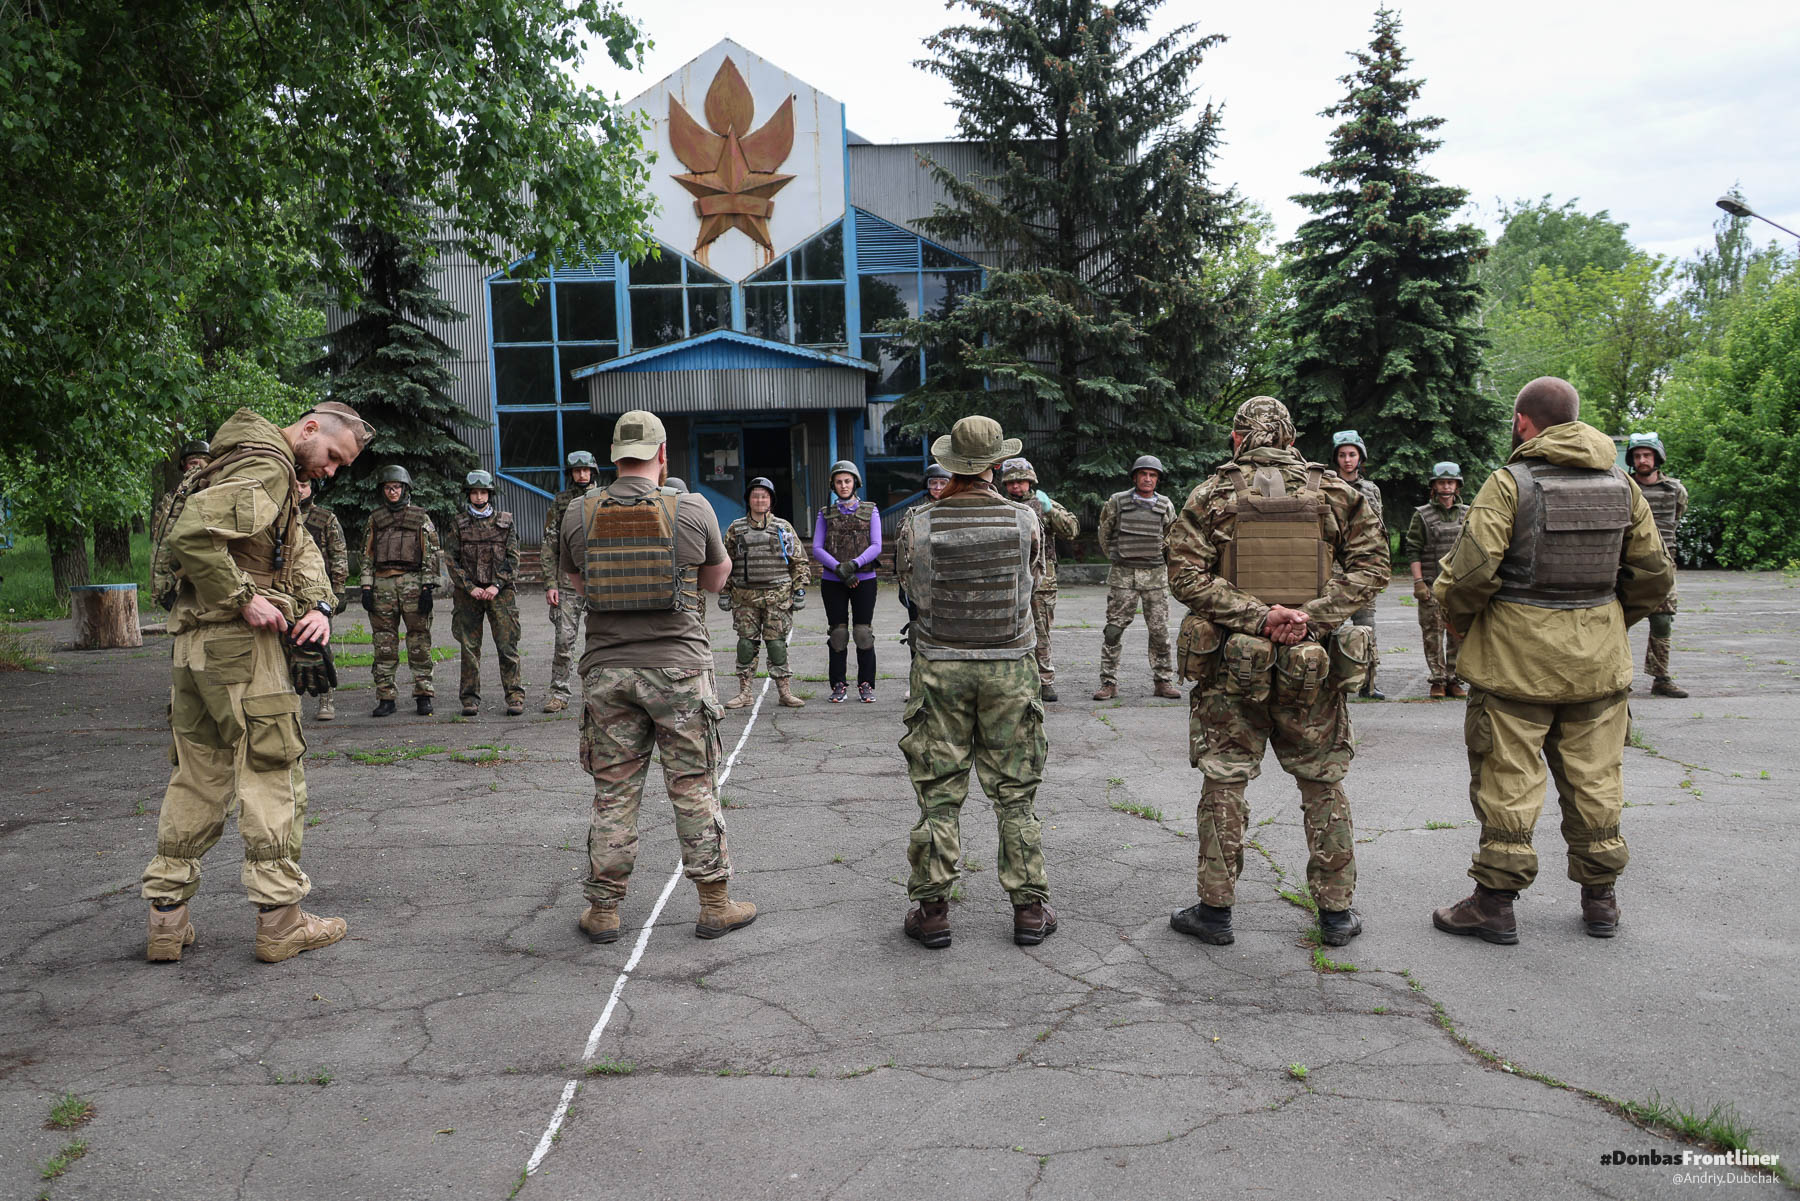 Donbasfrontliner - Тренування парамедиків Госпітальєрів шикування